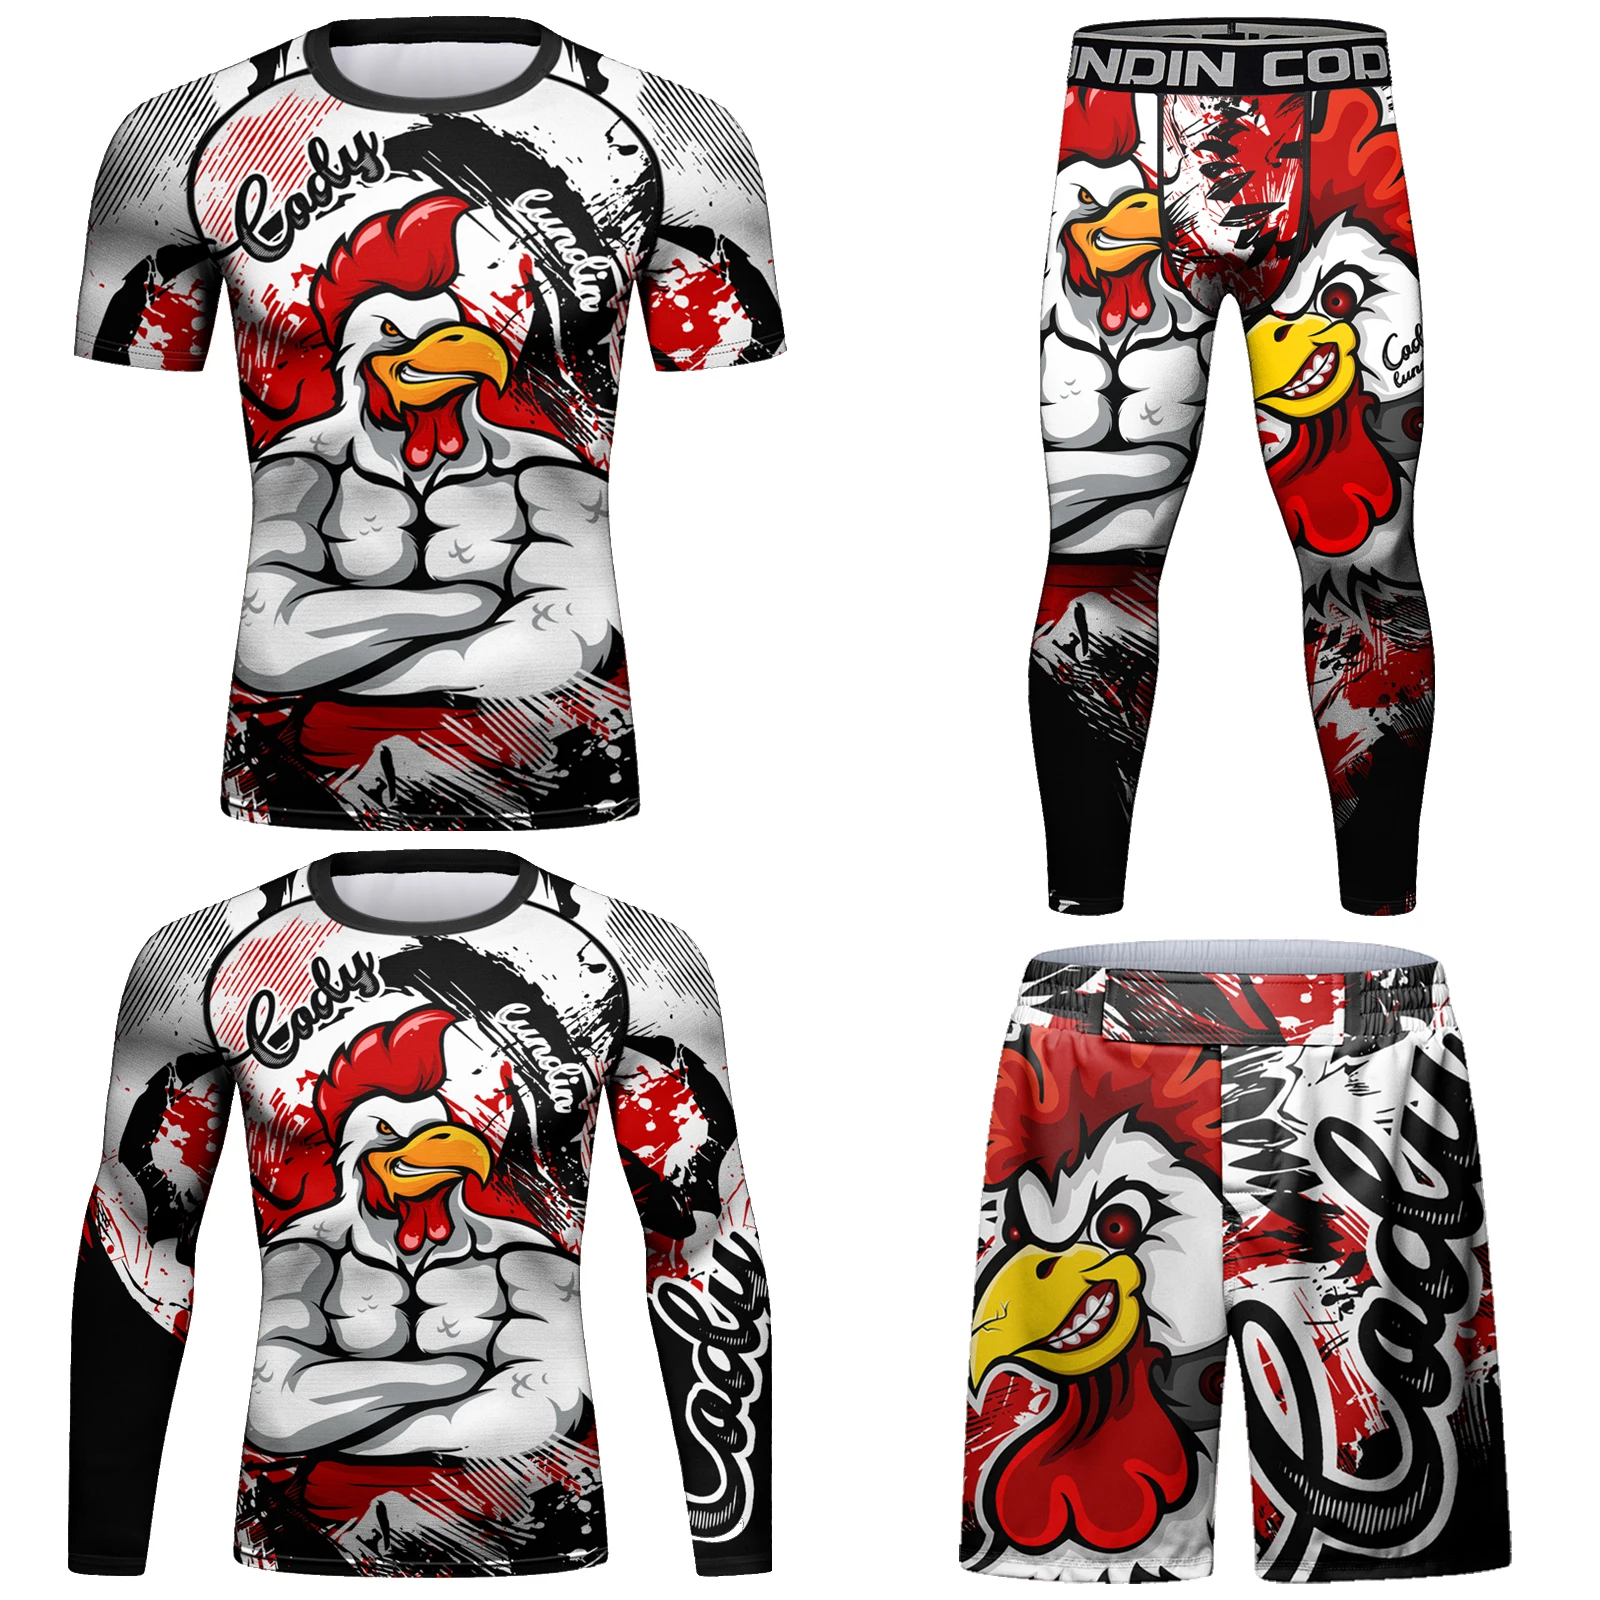 

Custom 4 in 1 Sportsuit Kickboxing Rashguard Jiu Jitsu T-shirt +Pant Set Men Bjj Gi Boxing Rash Guard Gym Muay Thai Shorts